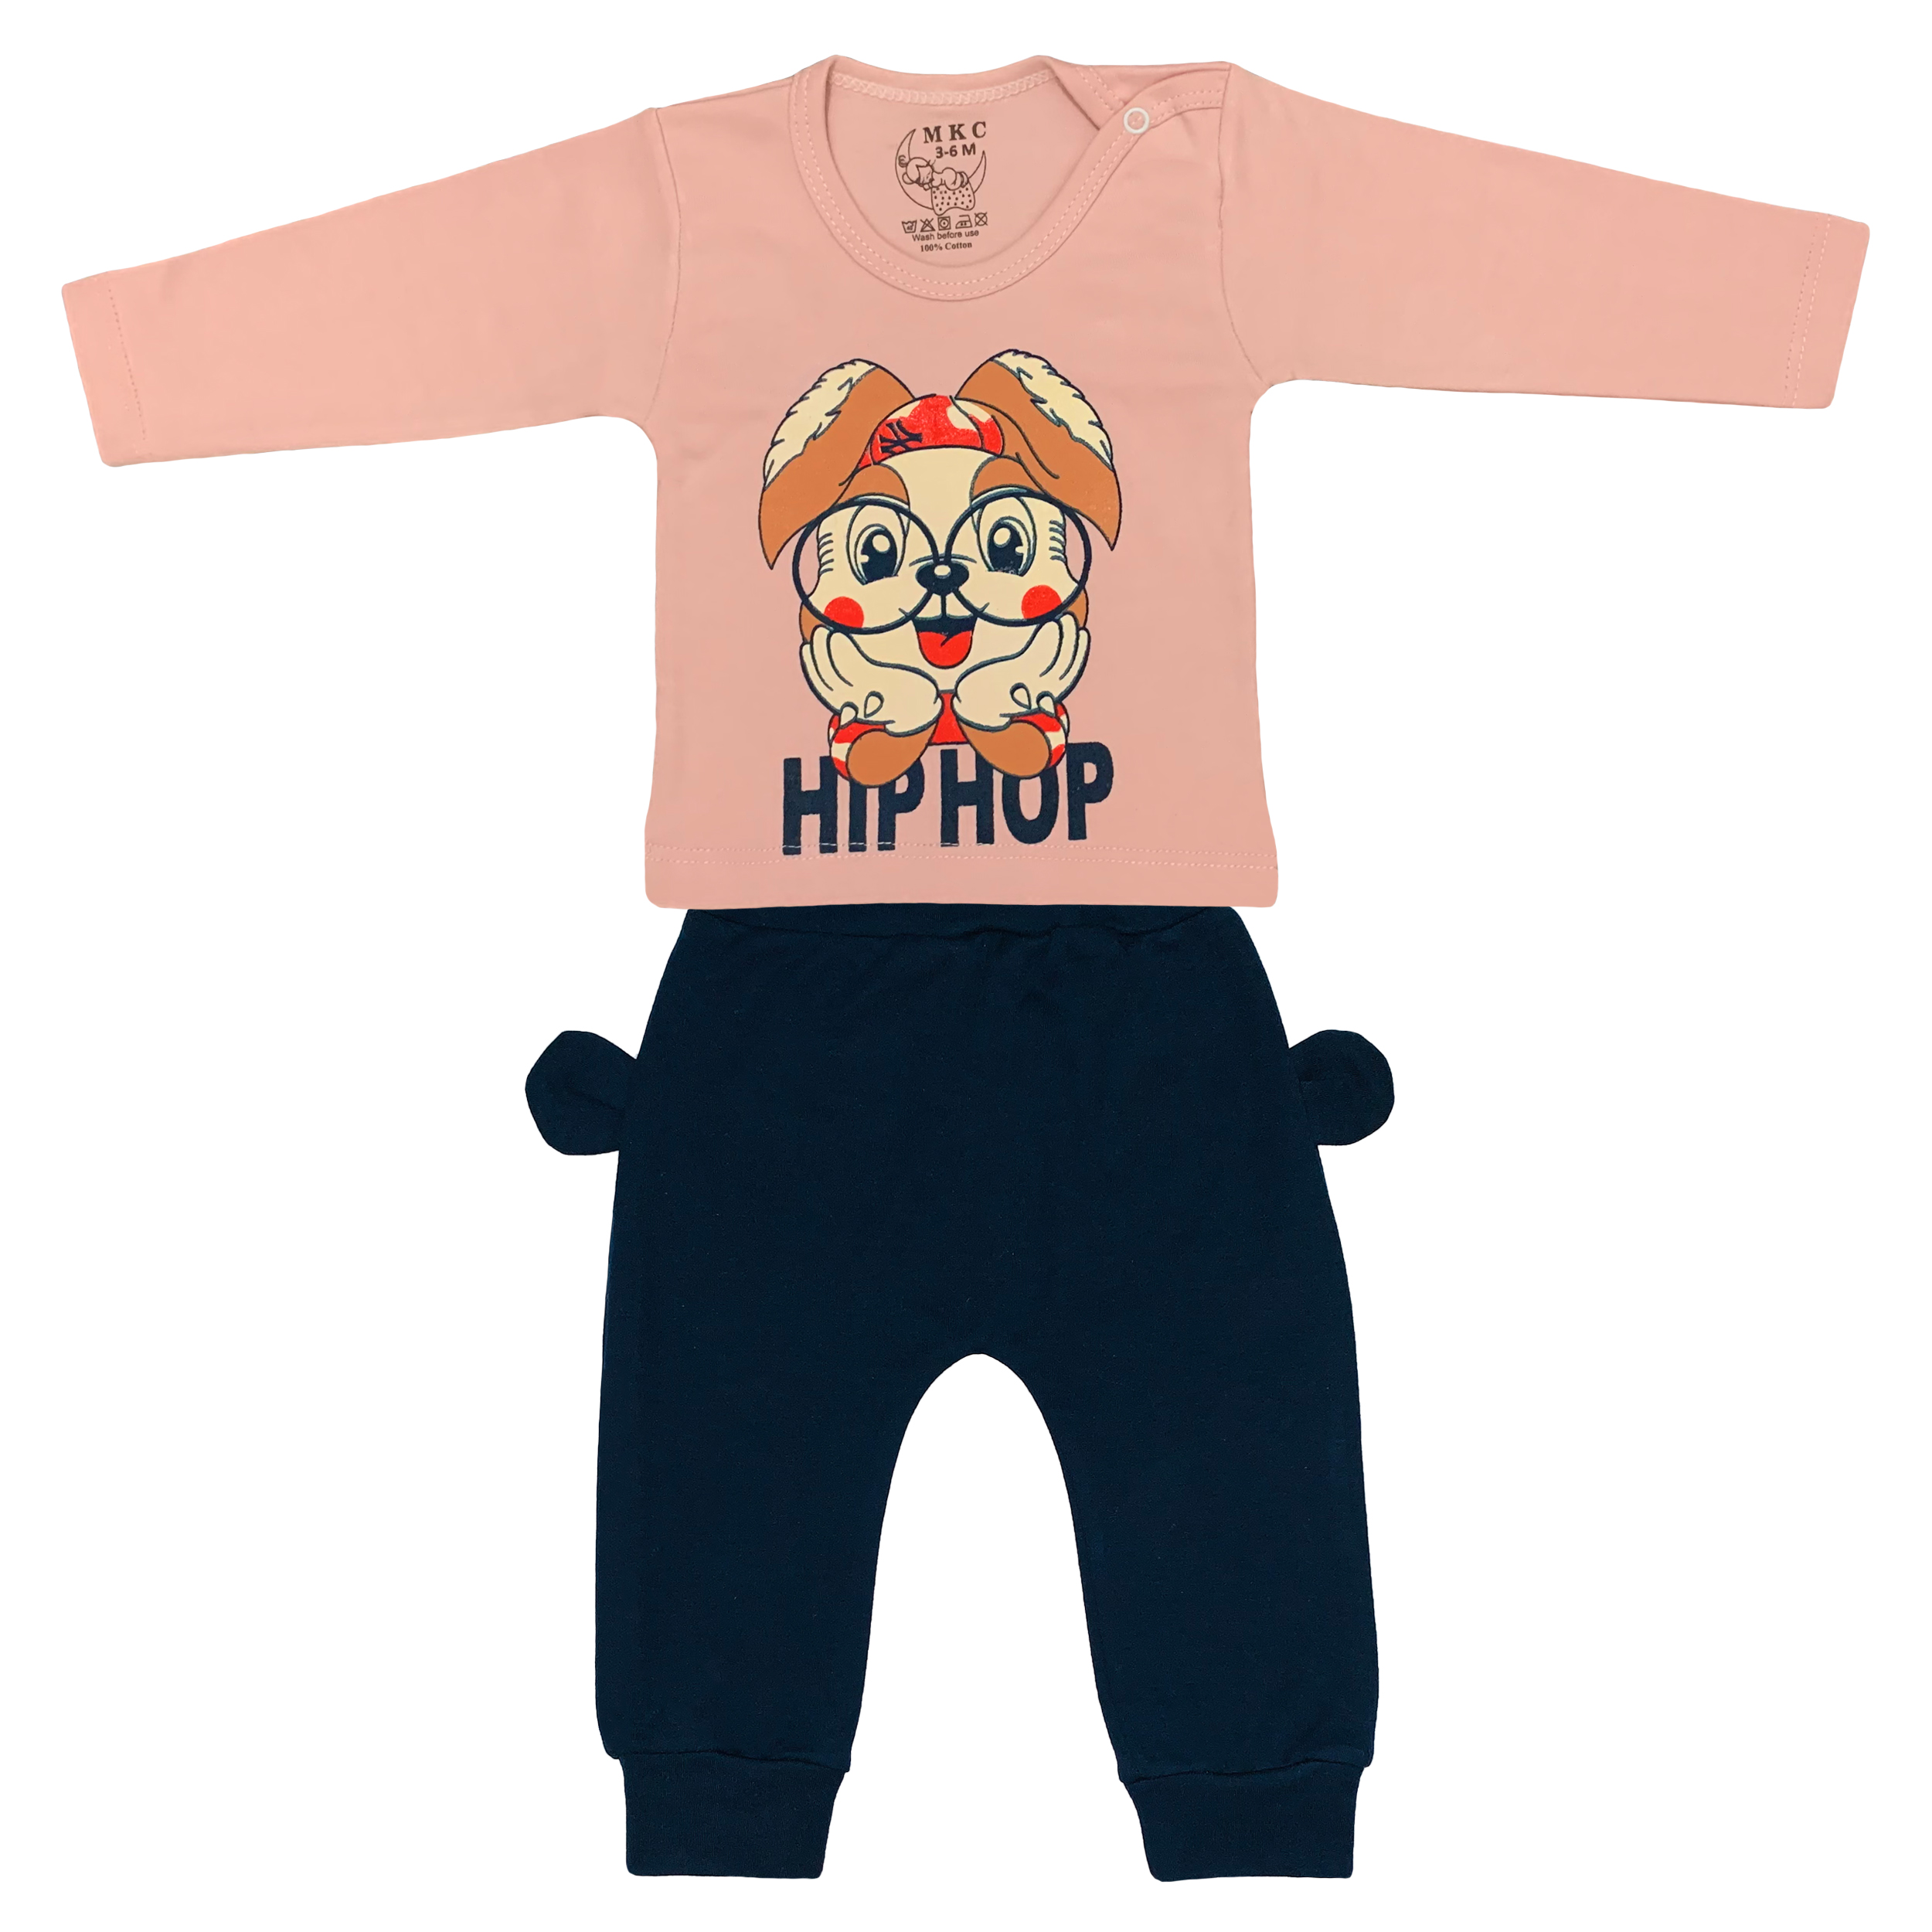 ست تی شرت و شلوار نوزادی ام کی سی طرح Hip Hop کد FF-145